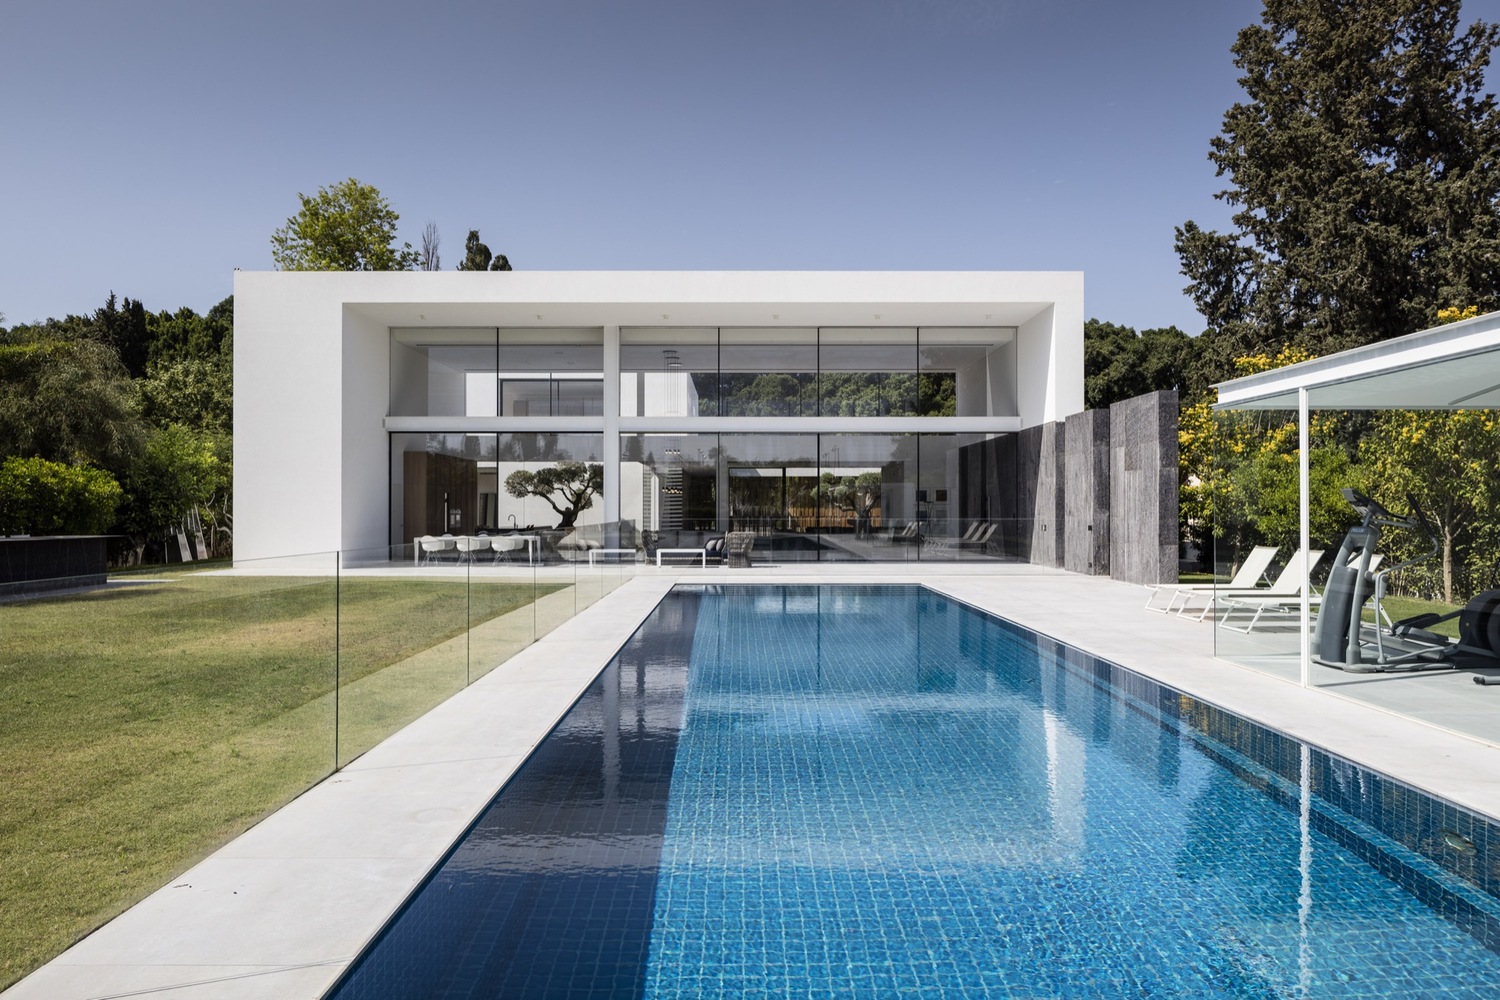 Casa bonita luxuosa e minimalista